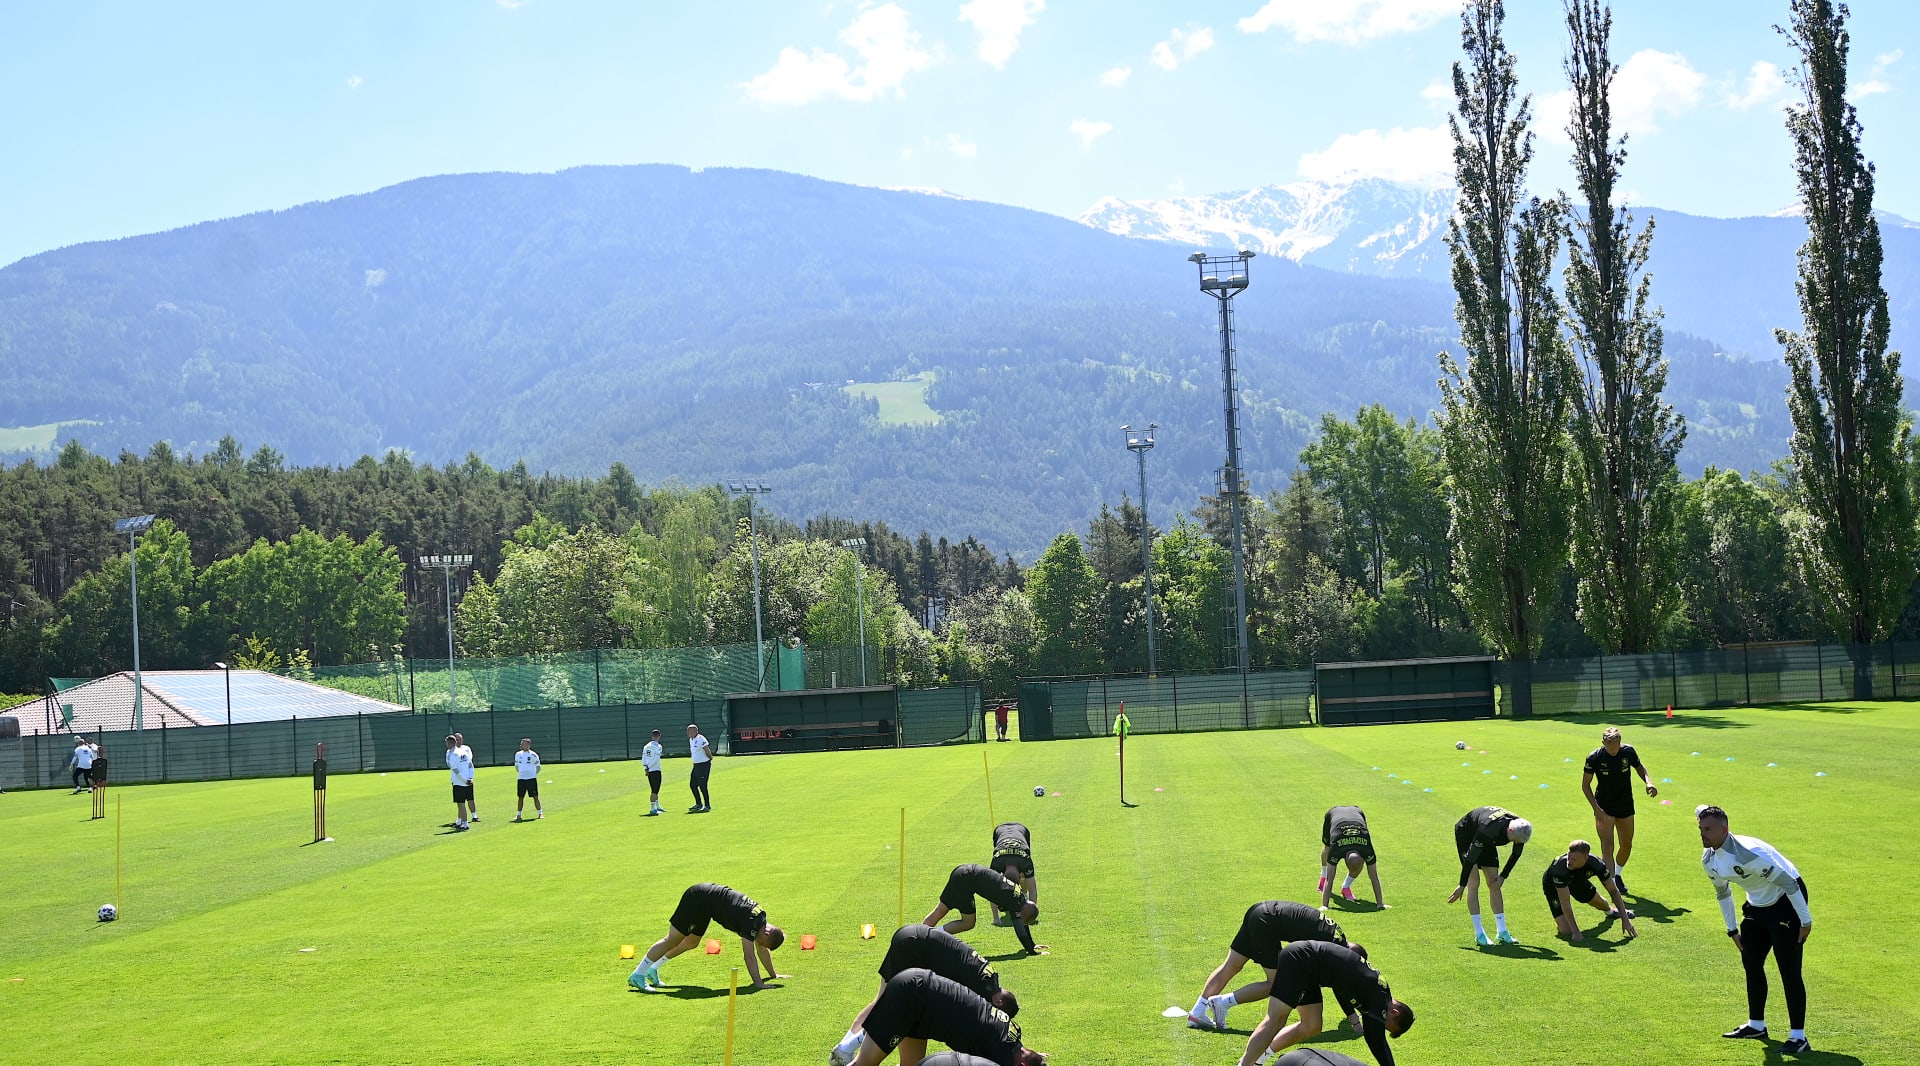 Čeští fotbalisté trénují pod vrcholky Alp před mistrovstvím Evropy.